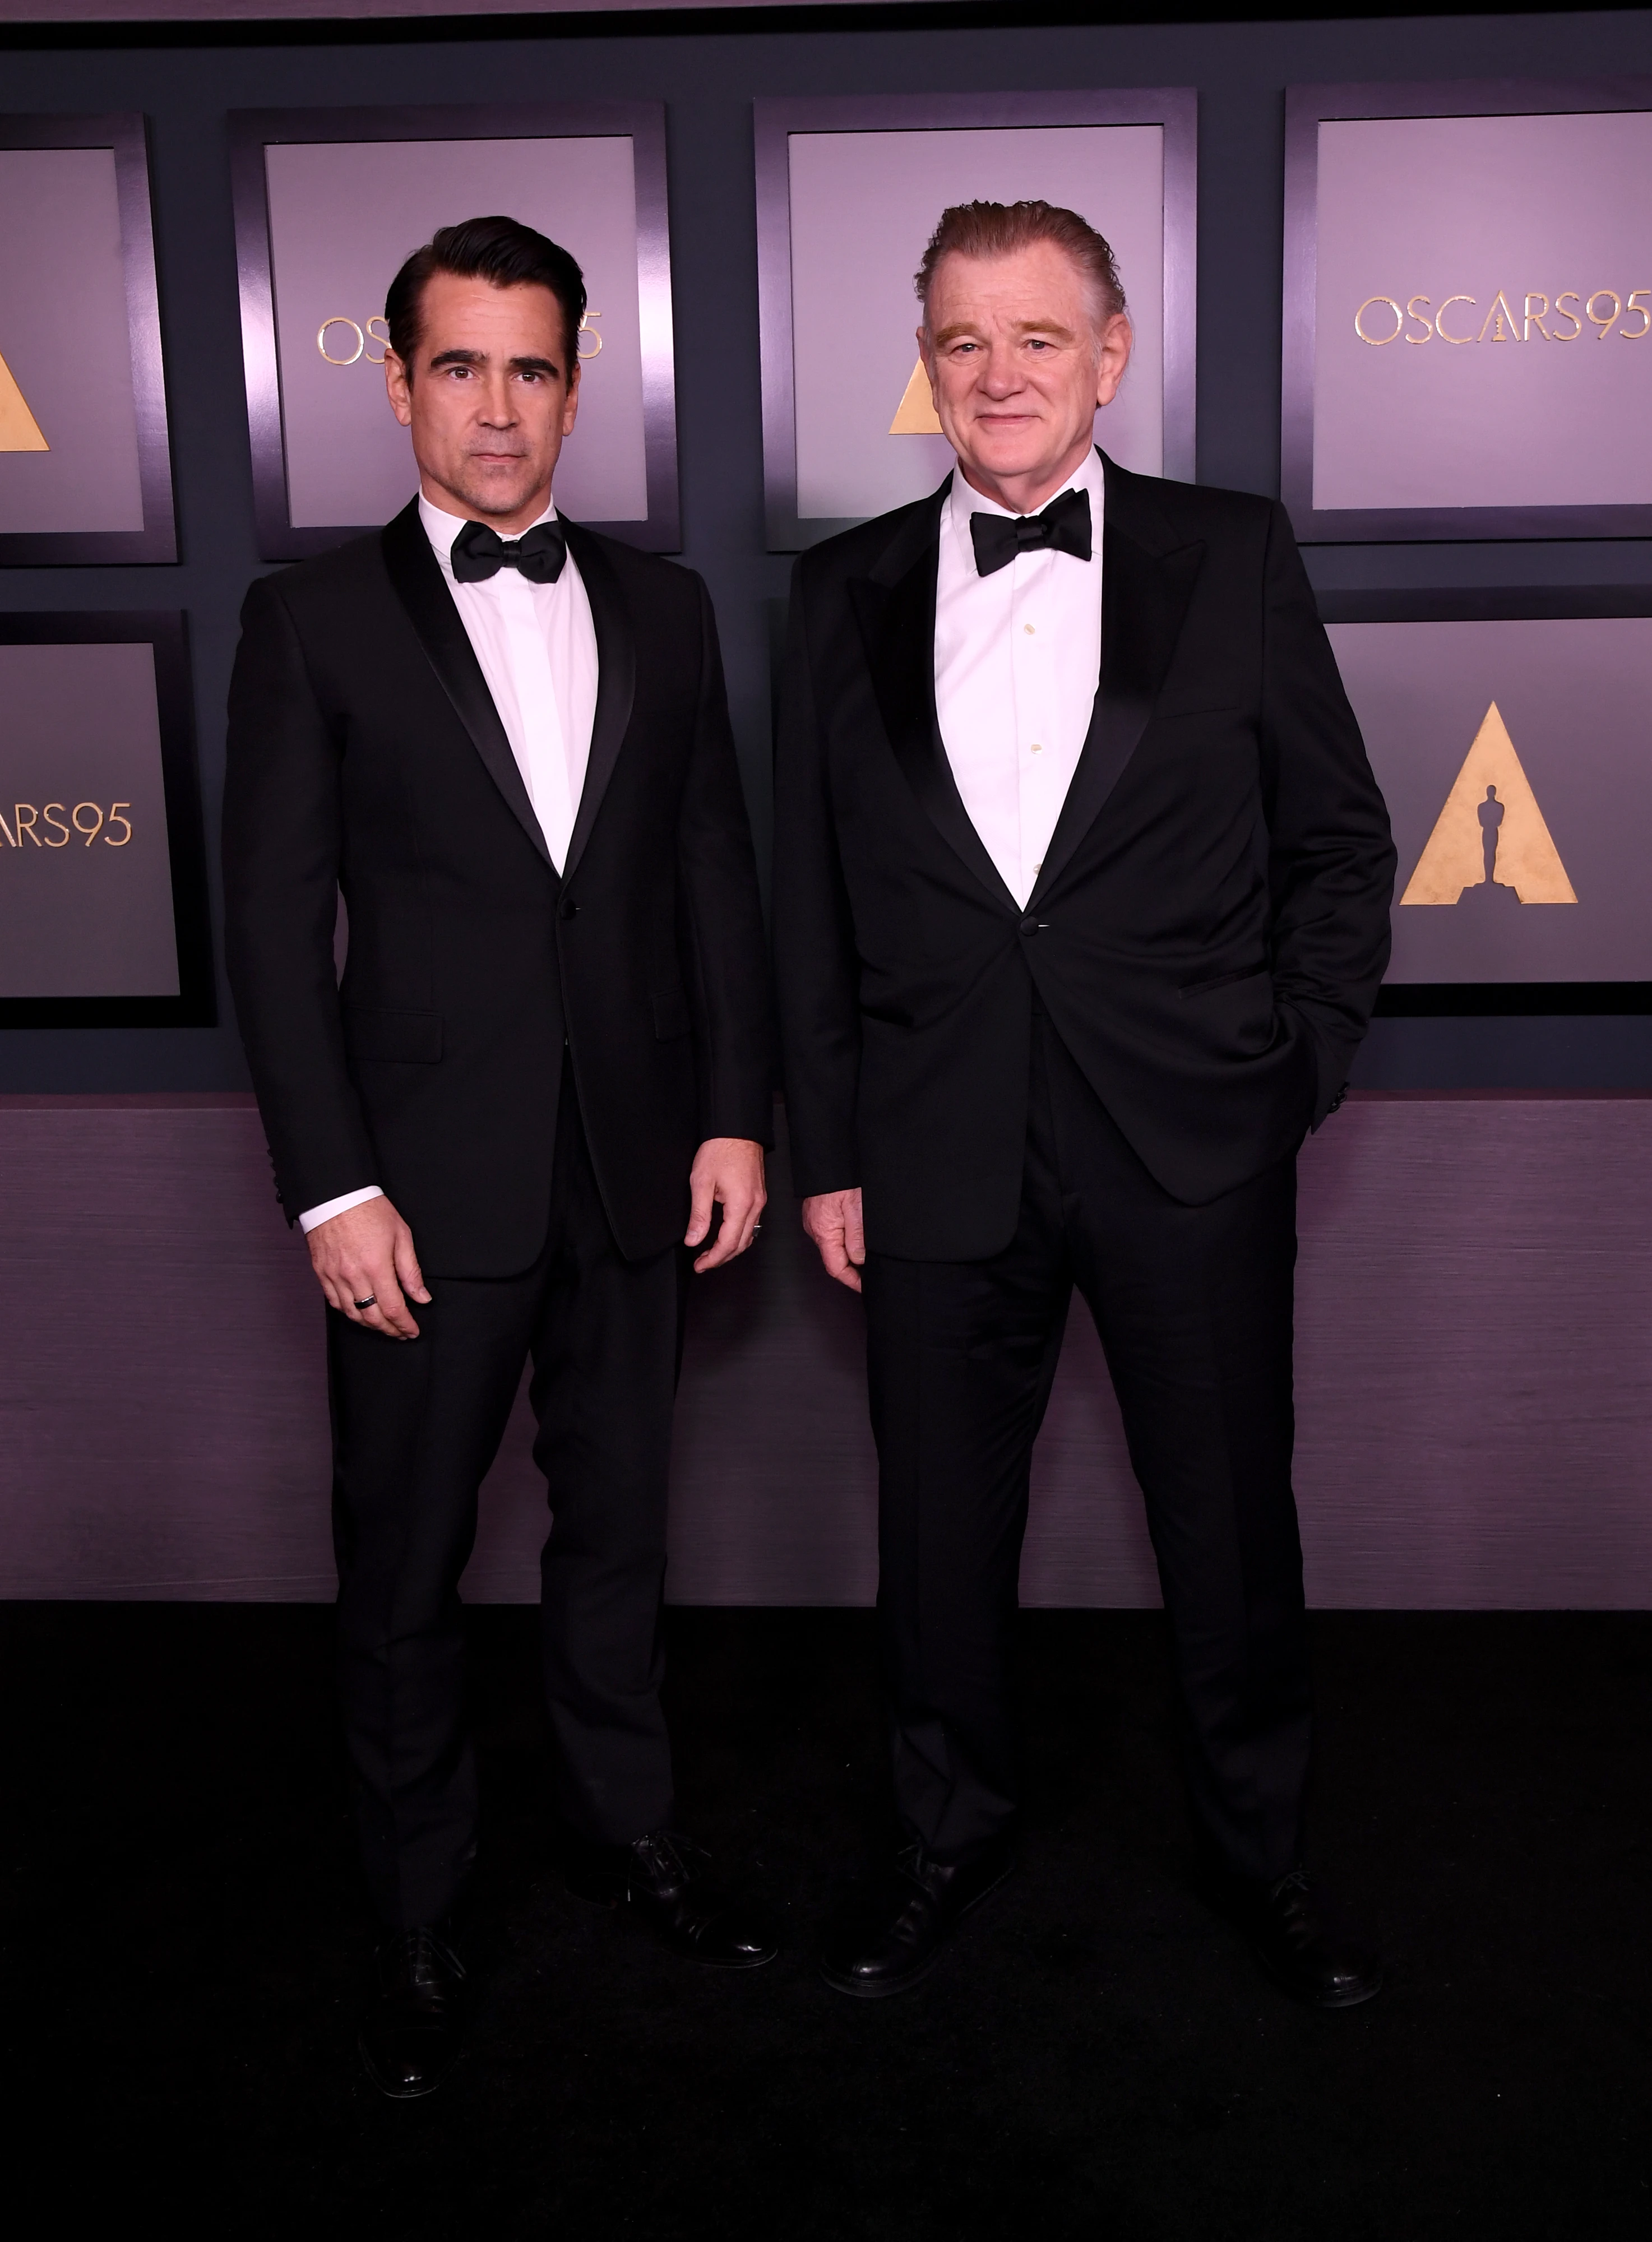 Colin Farrell and Brendan Gleeson